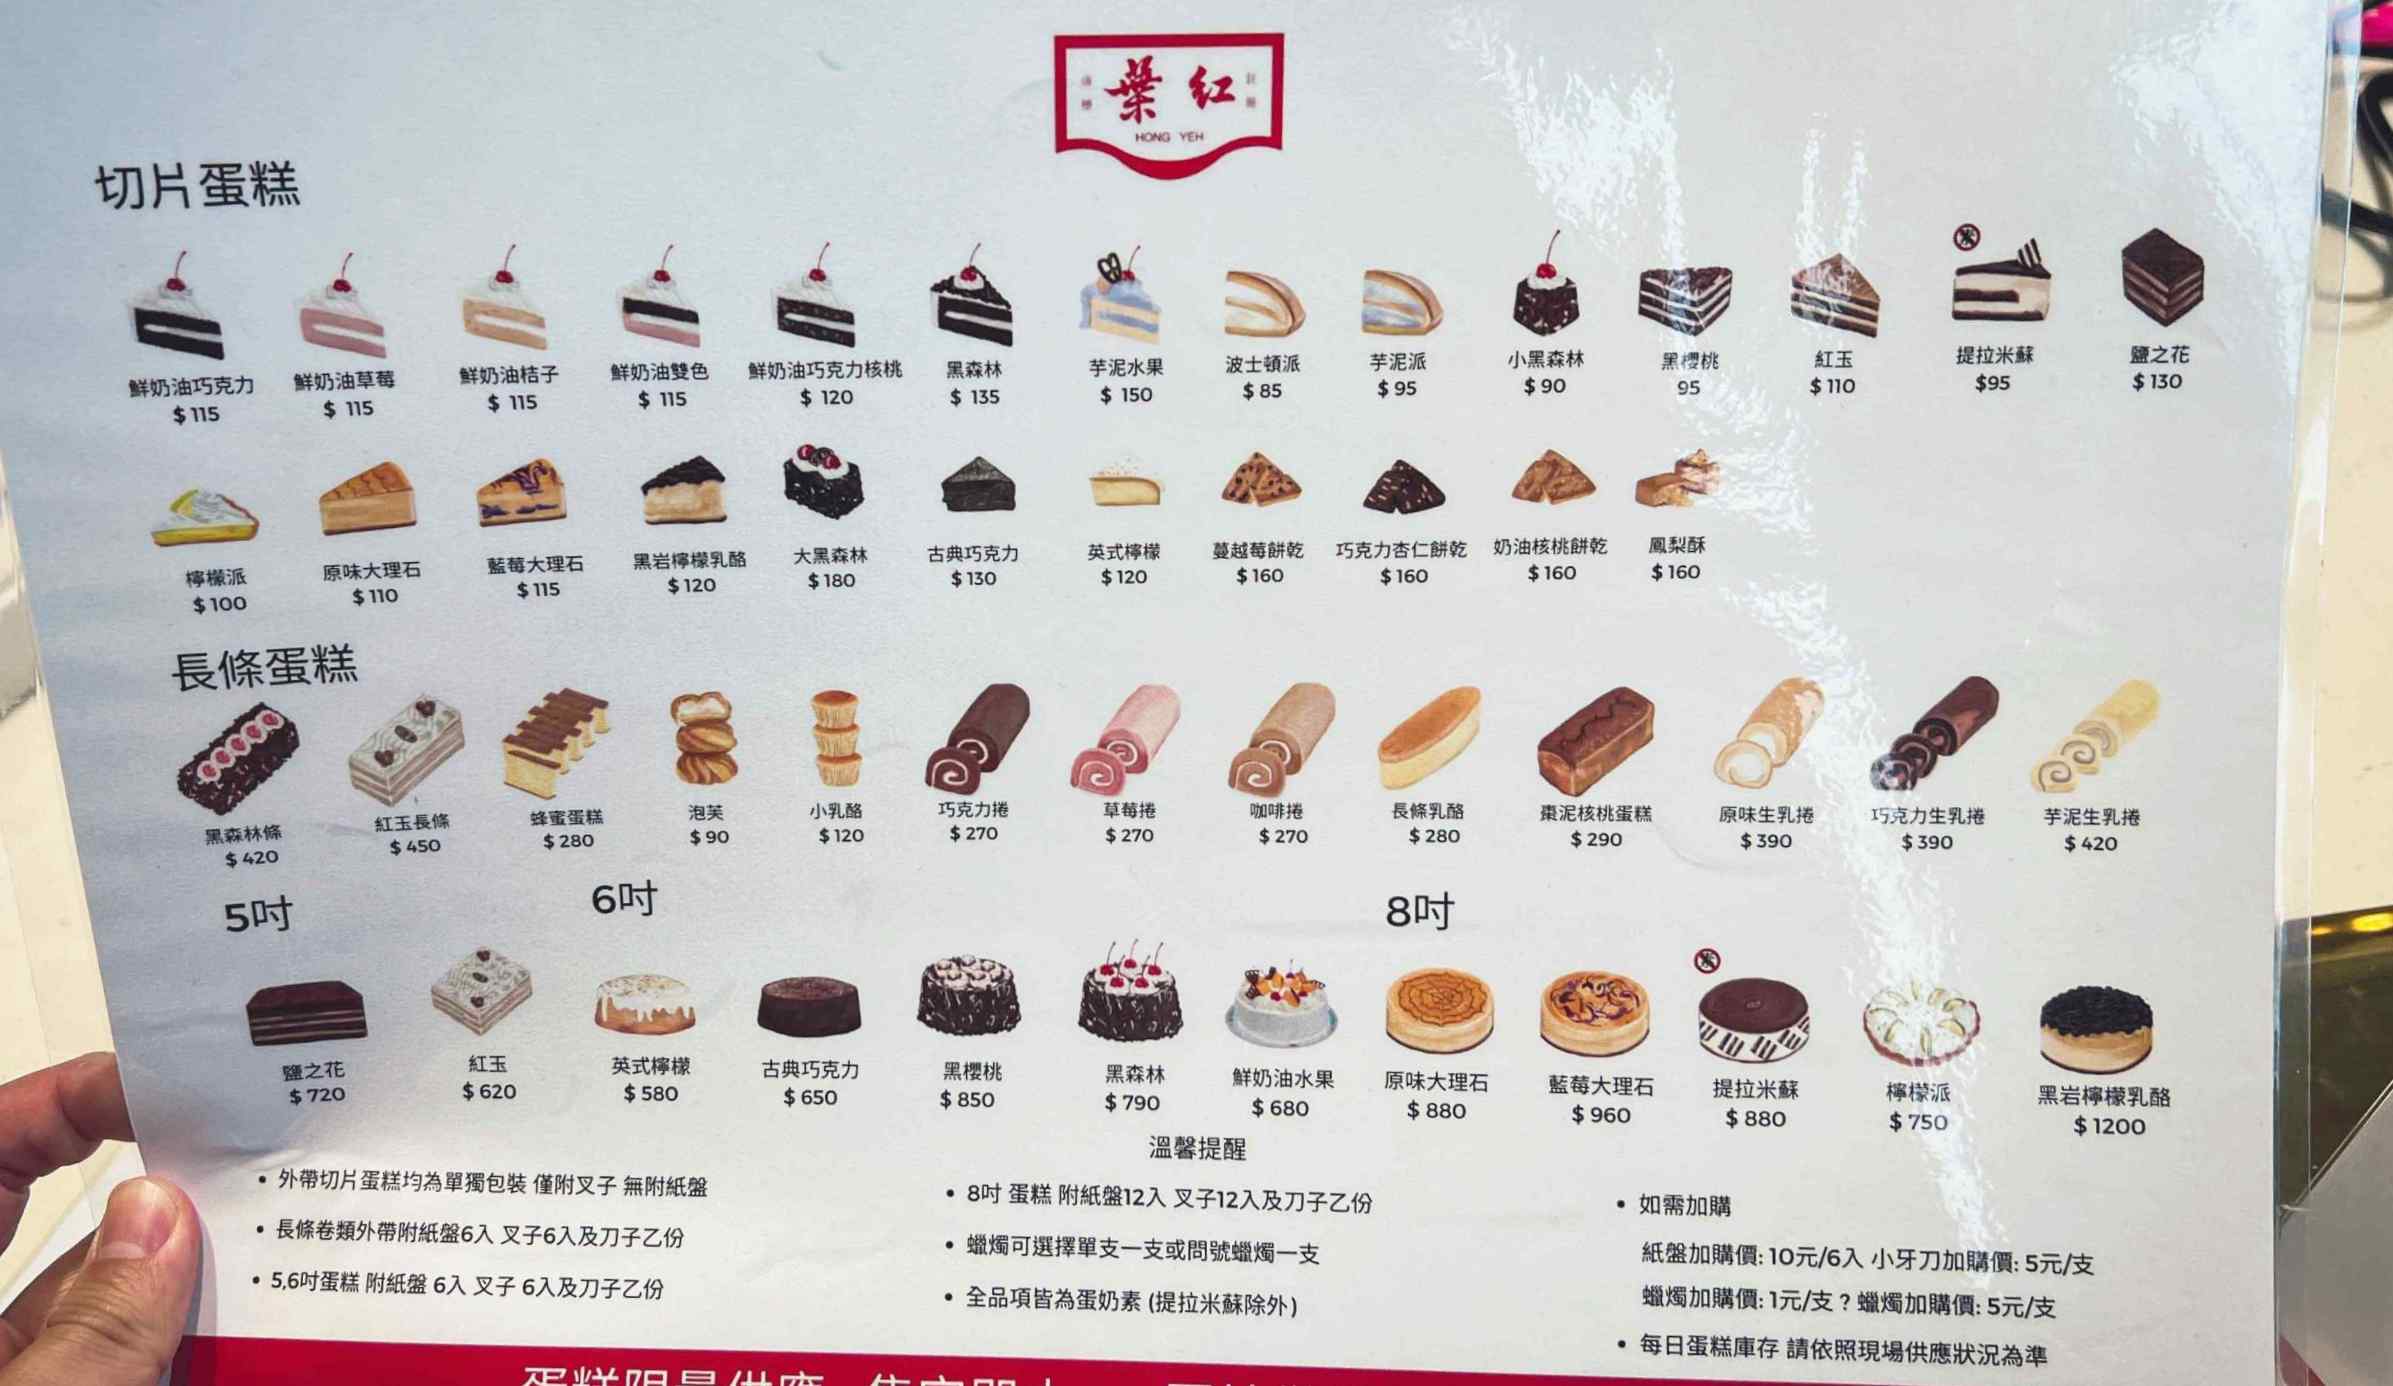 紅葉蛋糕, 紅葉蛋糕菜單, 紅葉蛋糕推薦, 紅葉蛋糕桃園大興店, 桃園美食